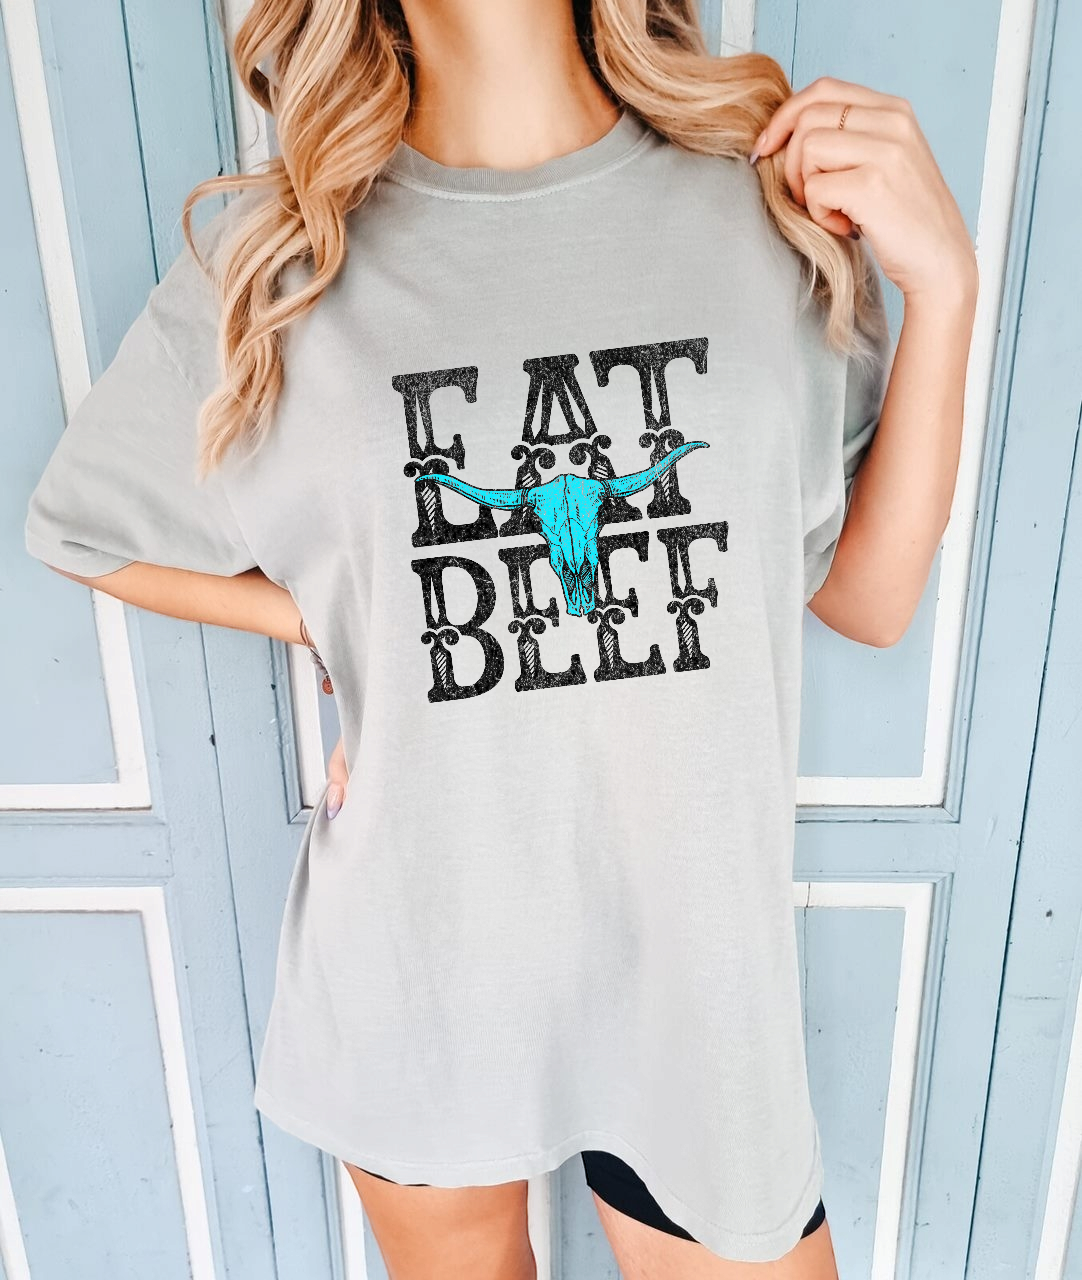 EAT BEEF